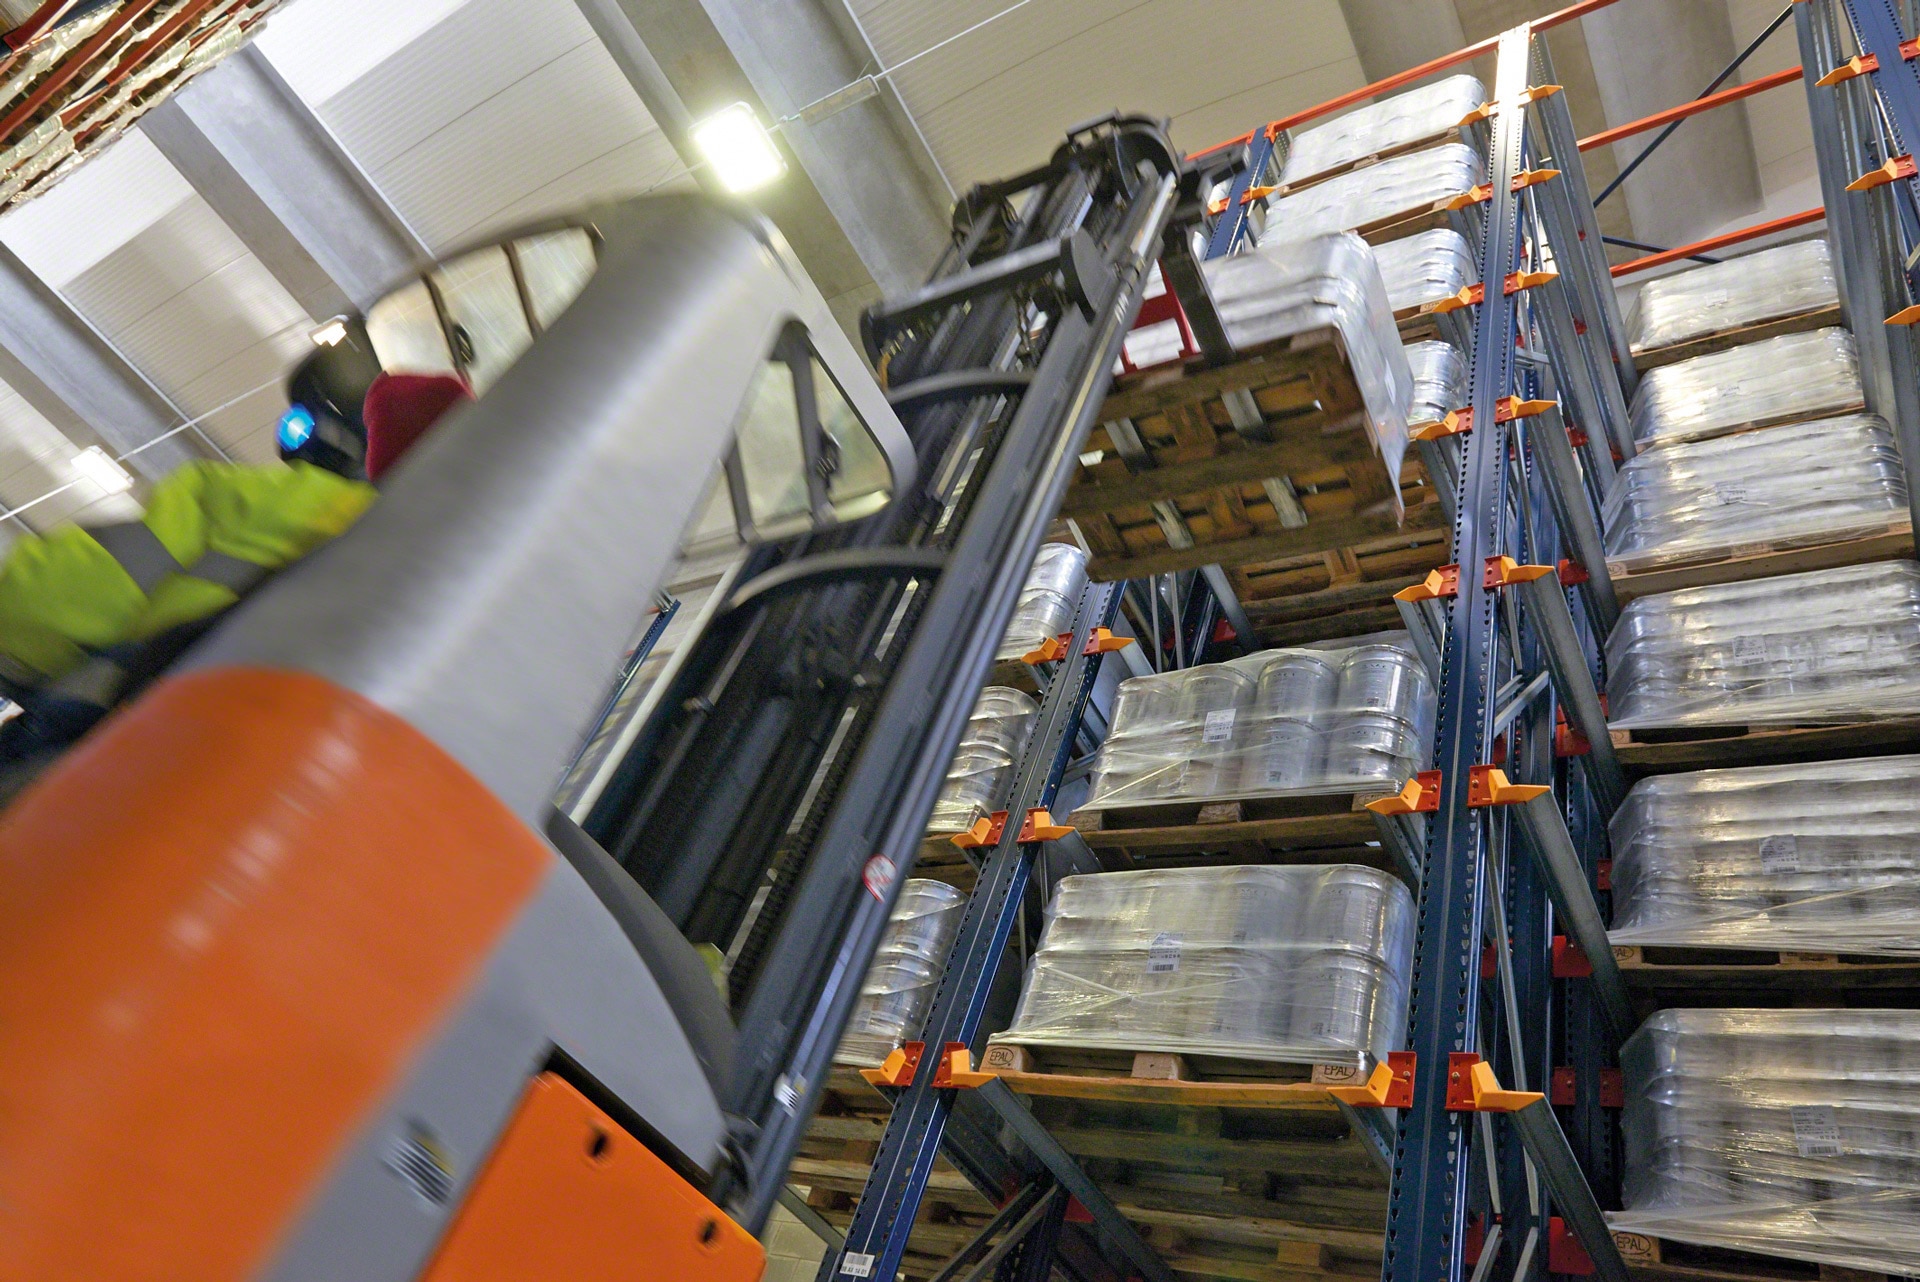 Los racks penetrables facilitan a los equipos de manutención la carga y descarga de mercadería 